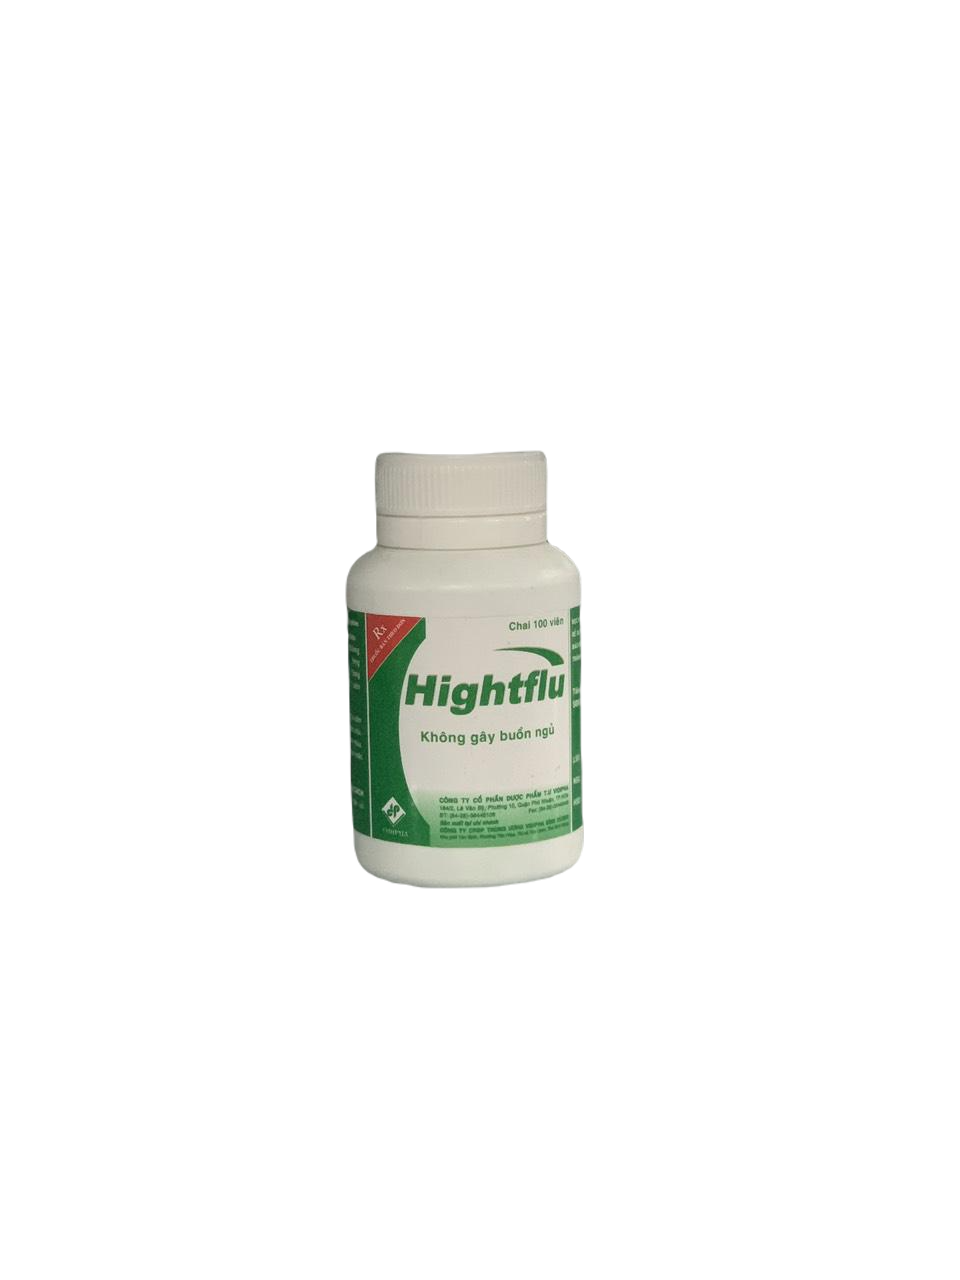 Hightflu (Paracetamol, Dextromethorphan, Loratadin) Vidipha (C/100v)